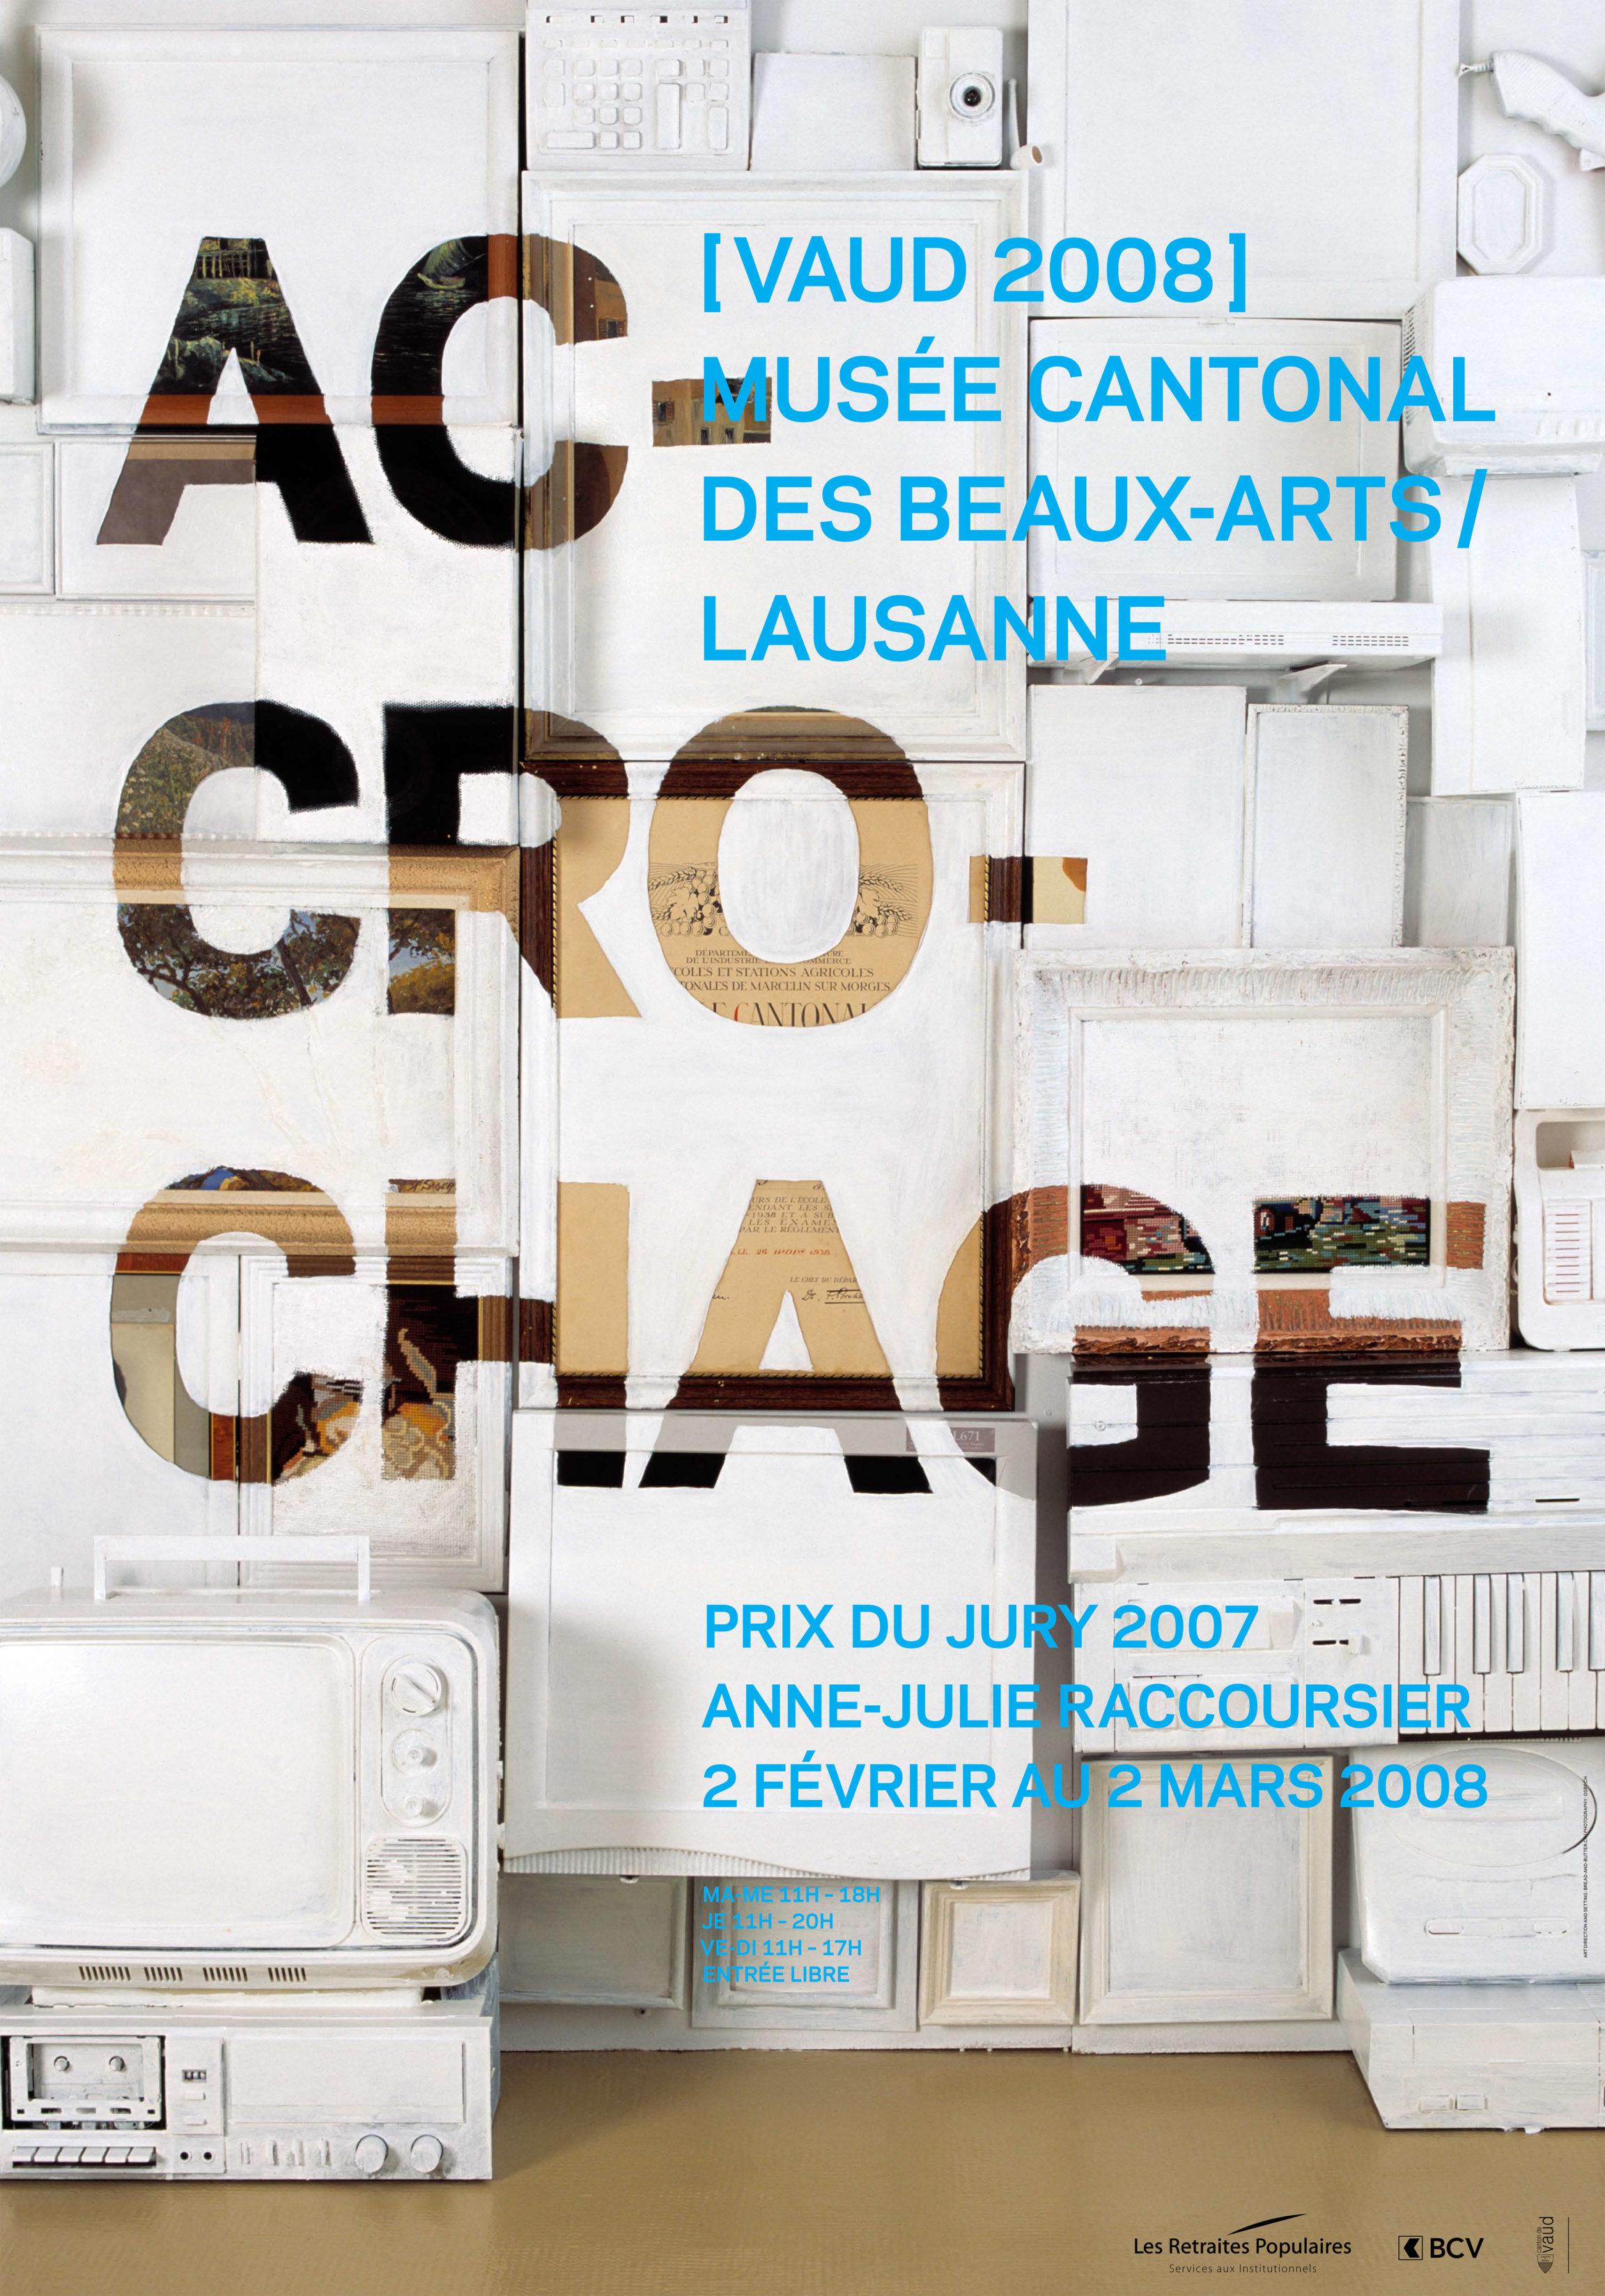 Accrochage [Vaud 2008] &<br> Anne-Julie Raccoursier, Prix du Jury 2007